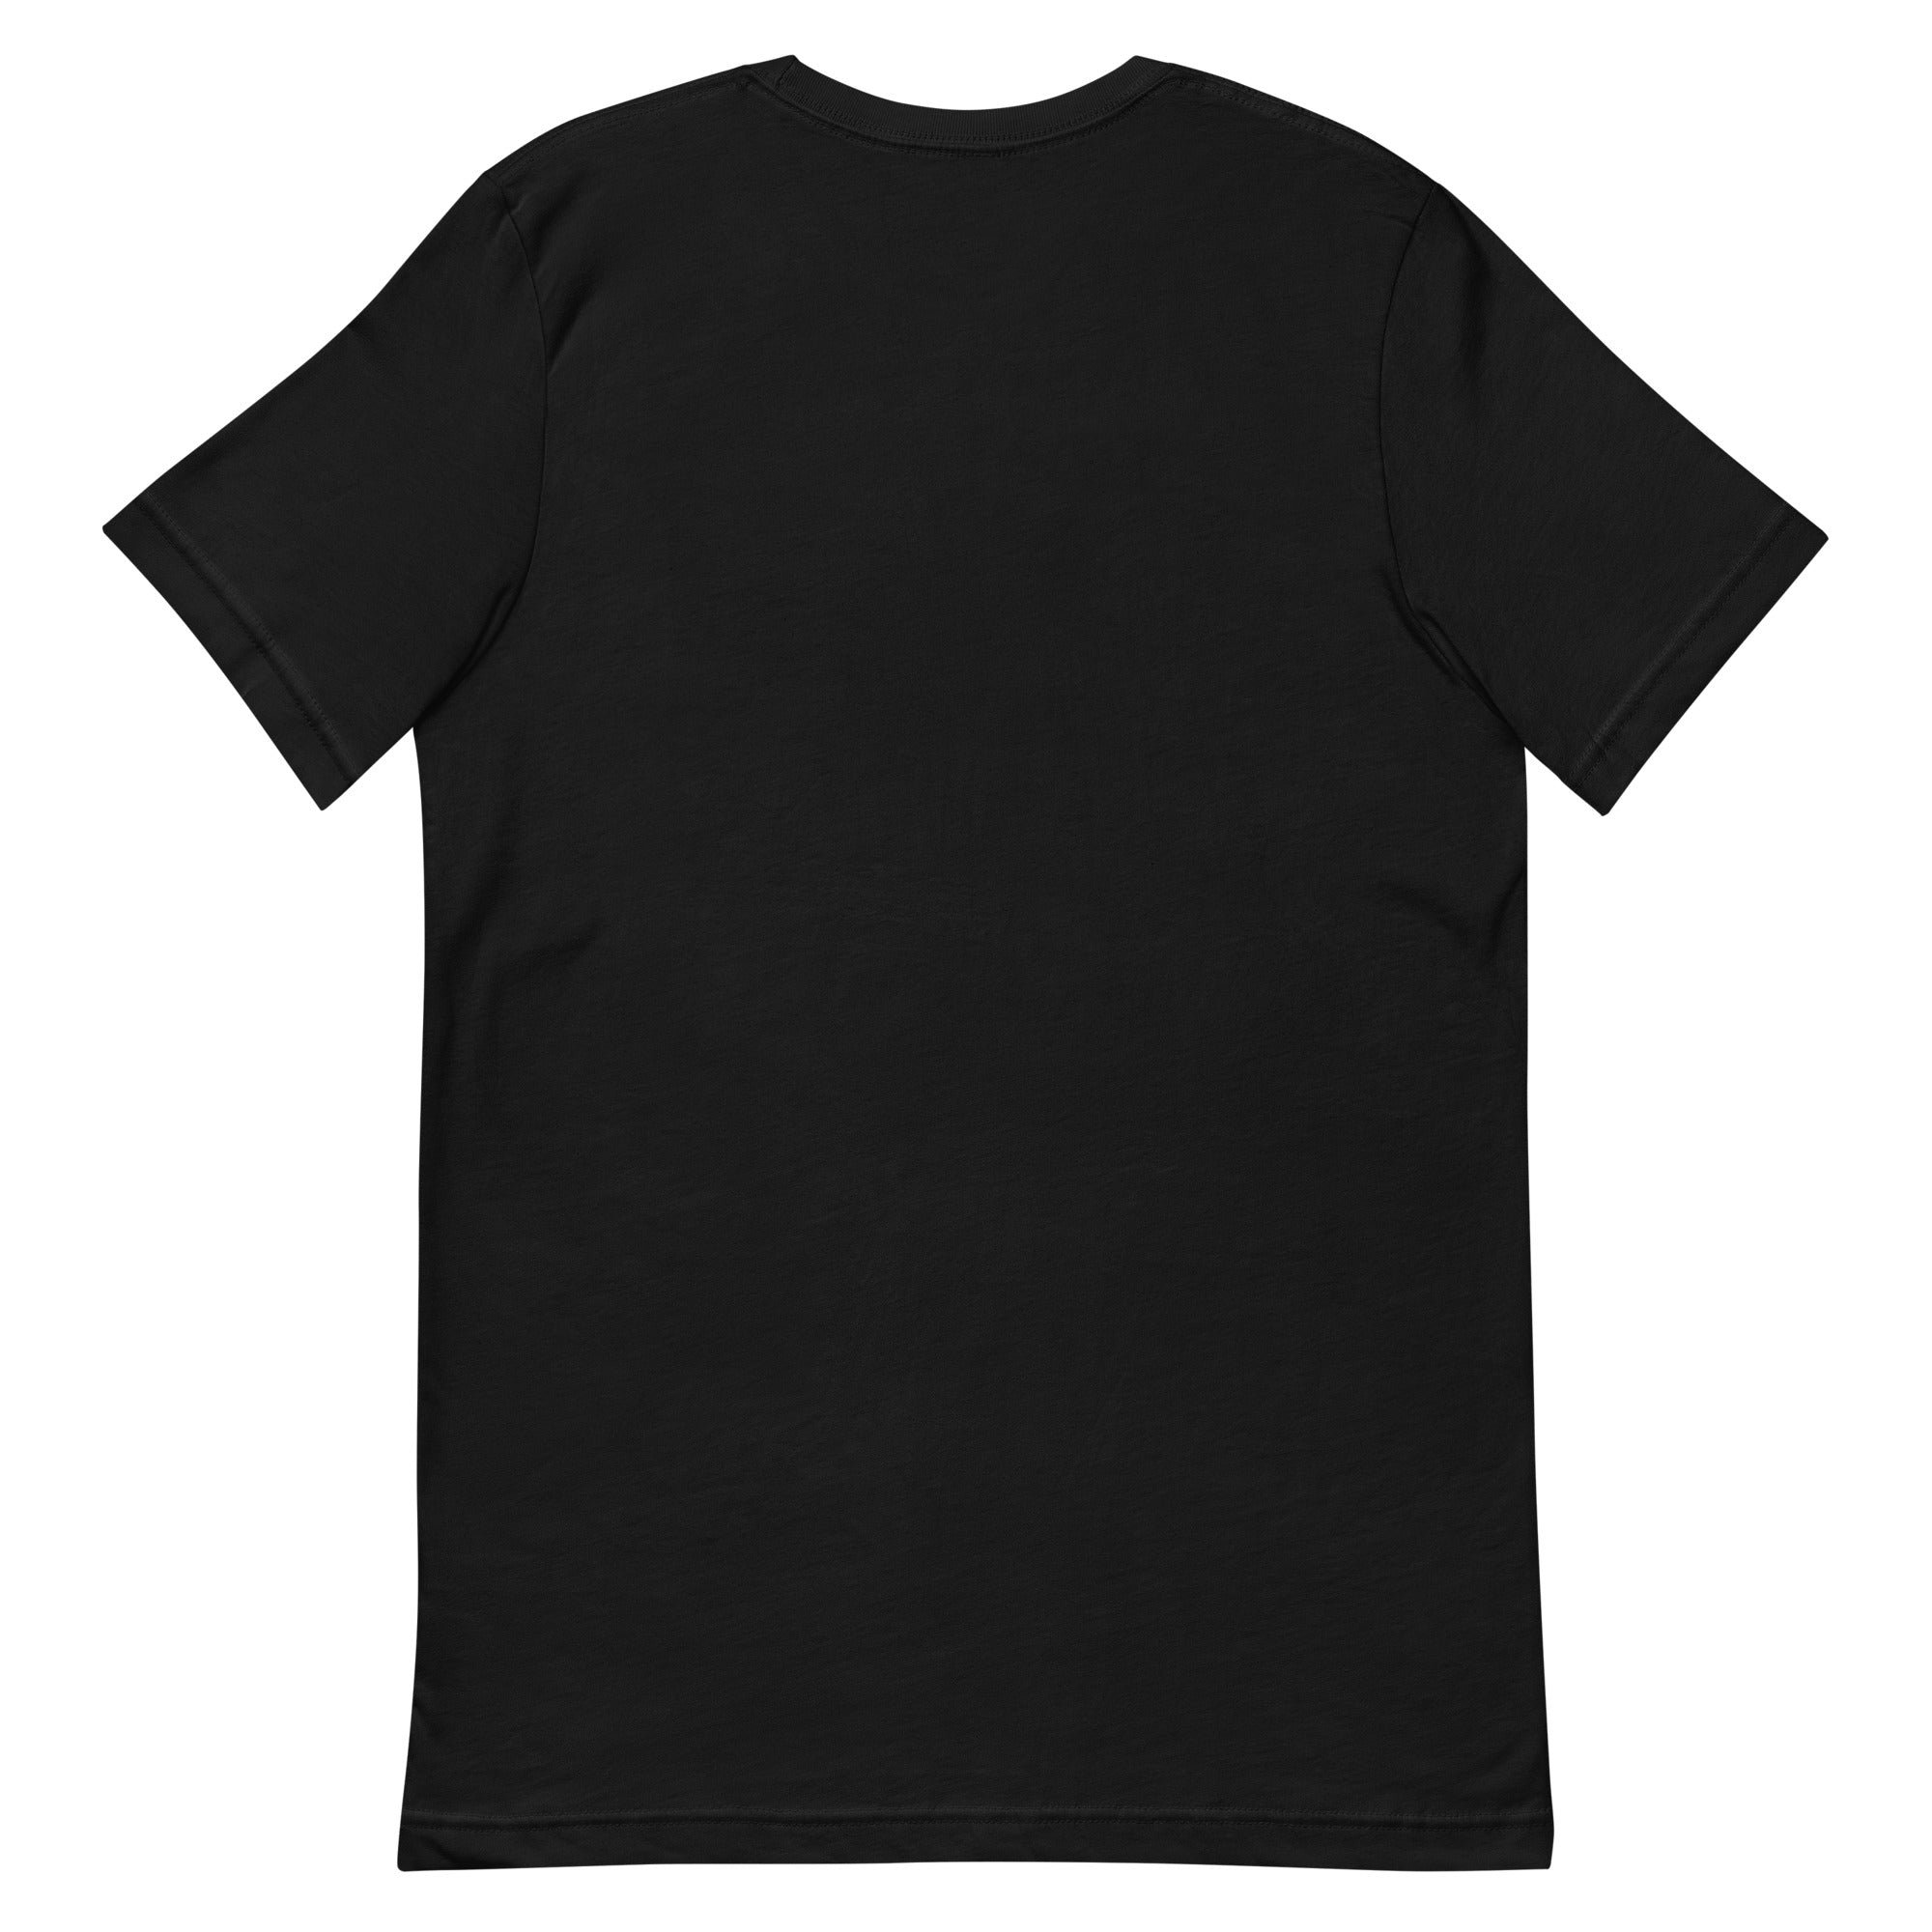 Monster High Pride Floral Black T-Shirt (Jeremy Holder)